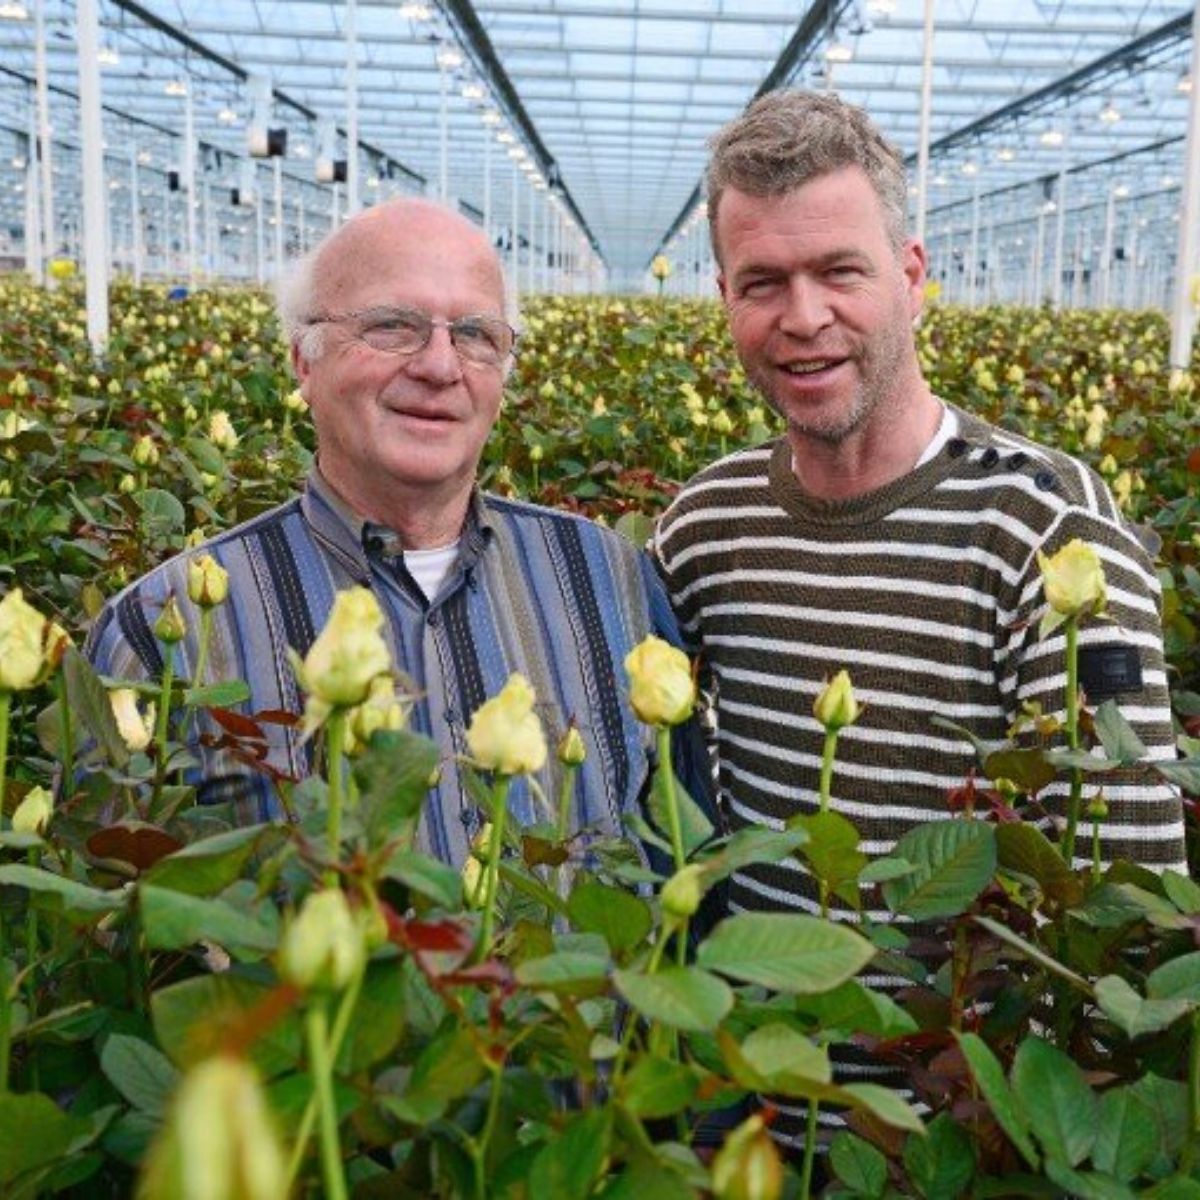 van-den-berg-roses-grower-on-thursd-featured